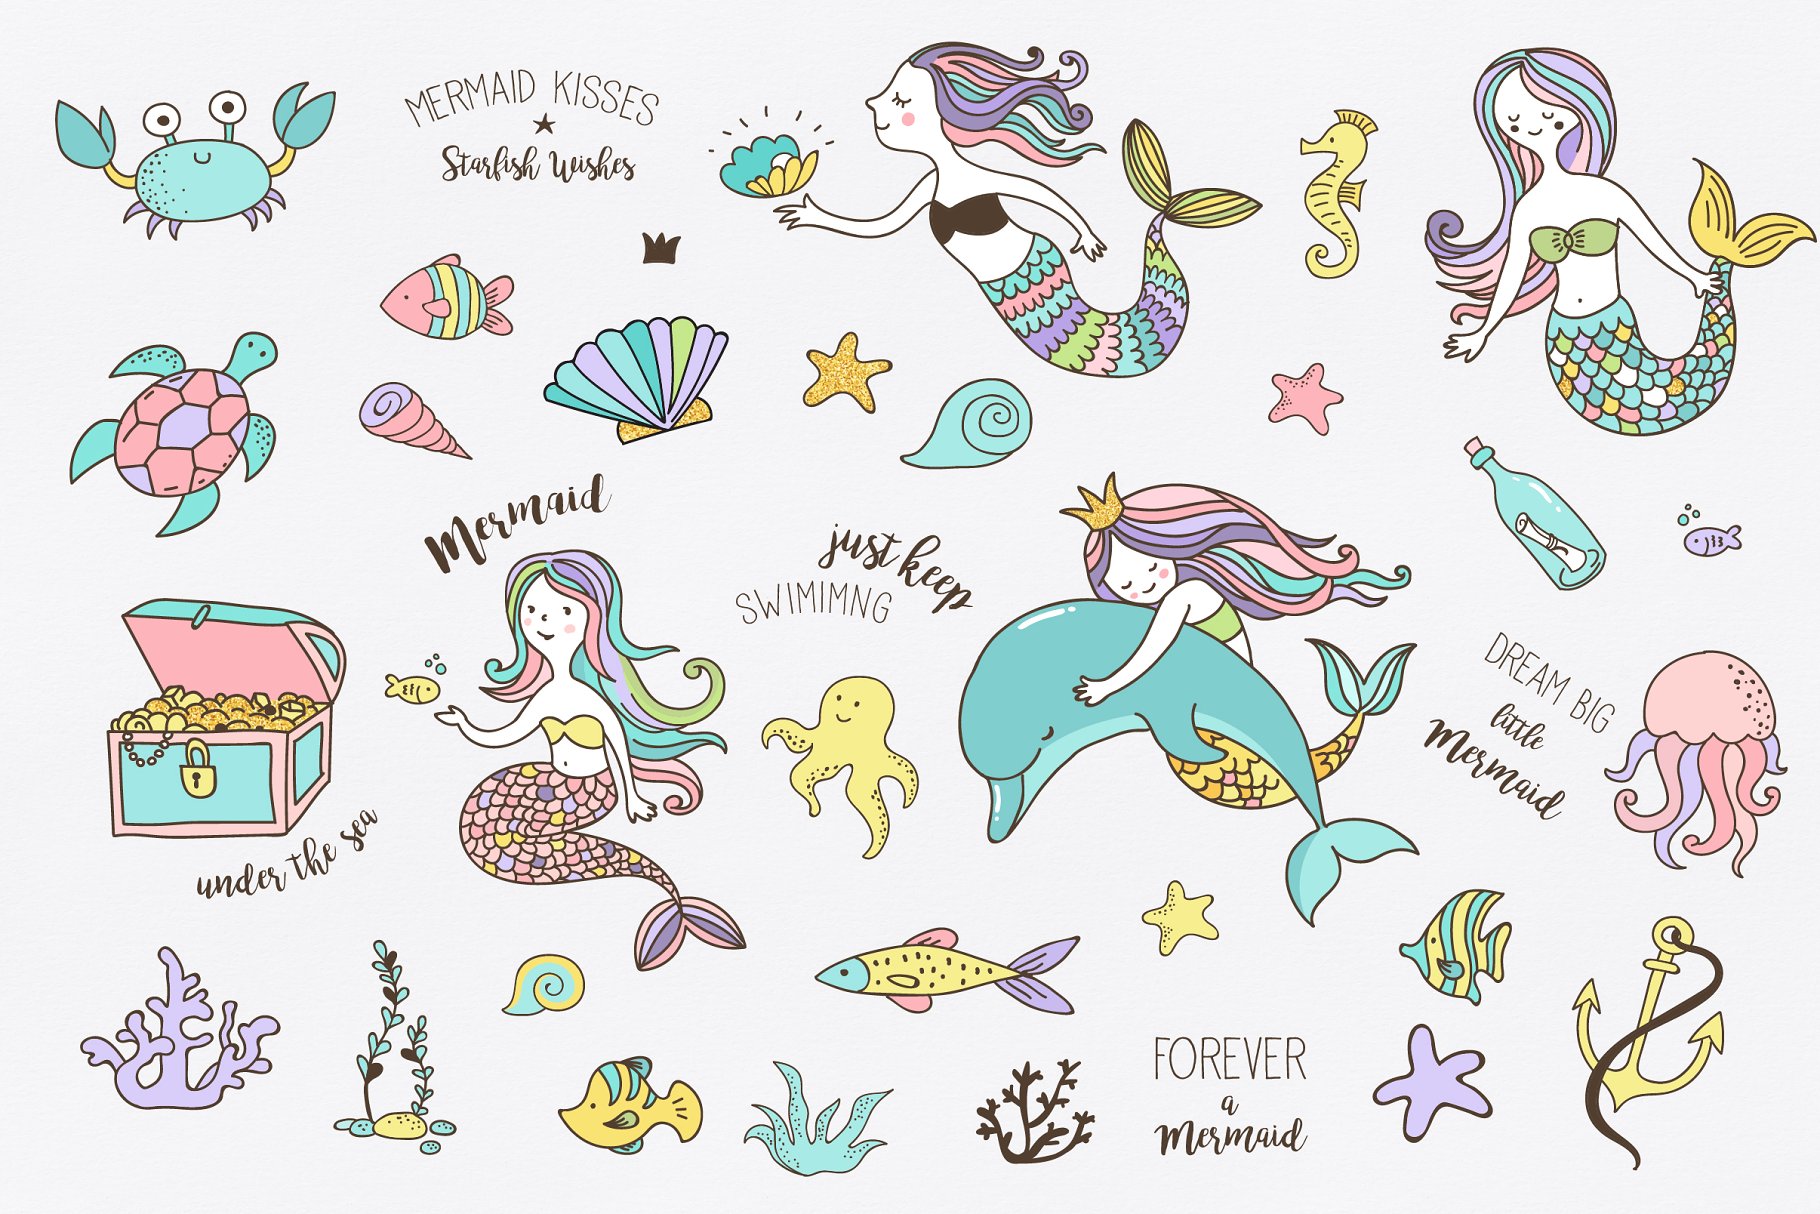 小美人鱼与海洋生物元素及贺卡模板 Little Mermaid – under the sea set插图1